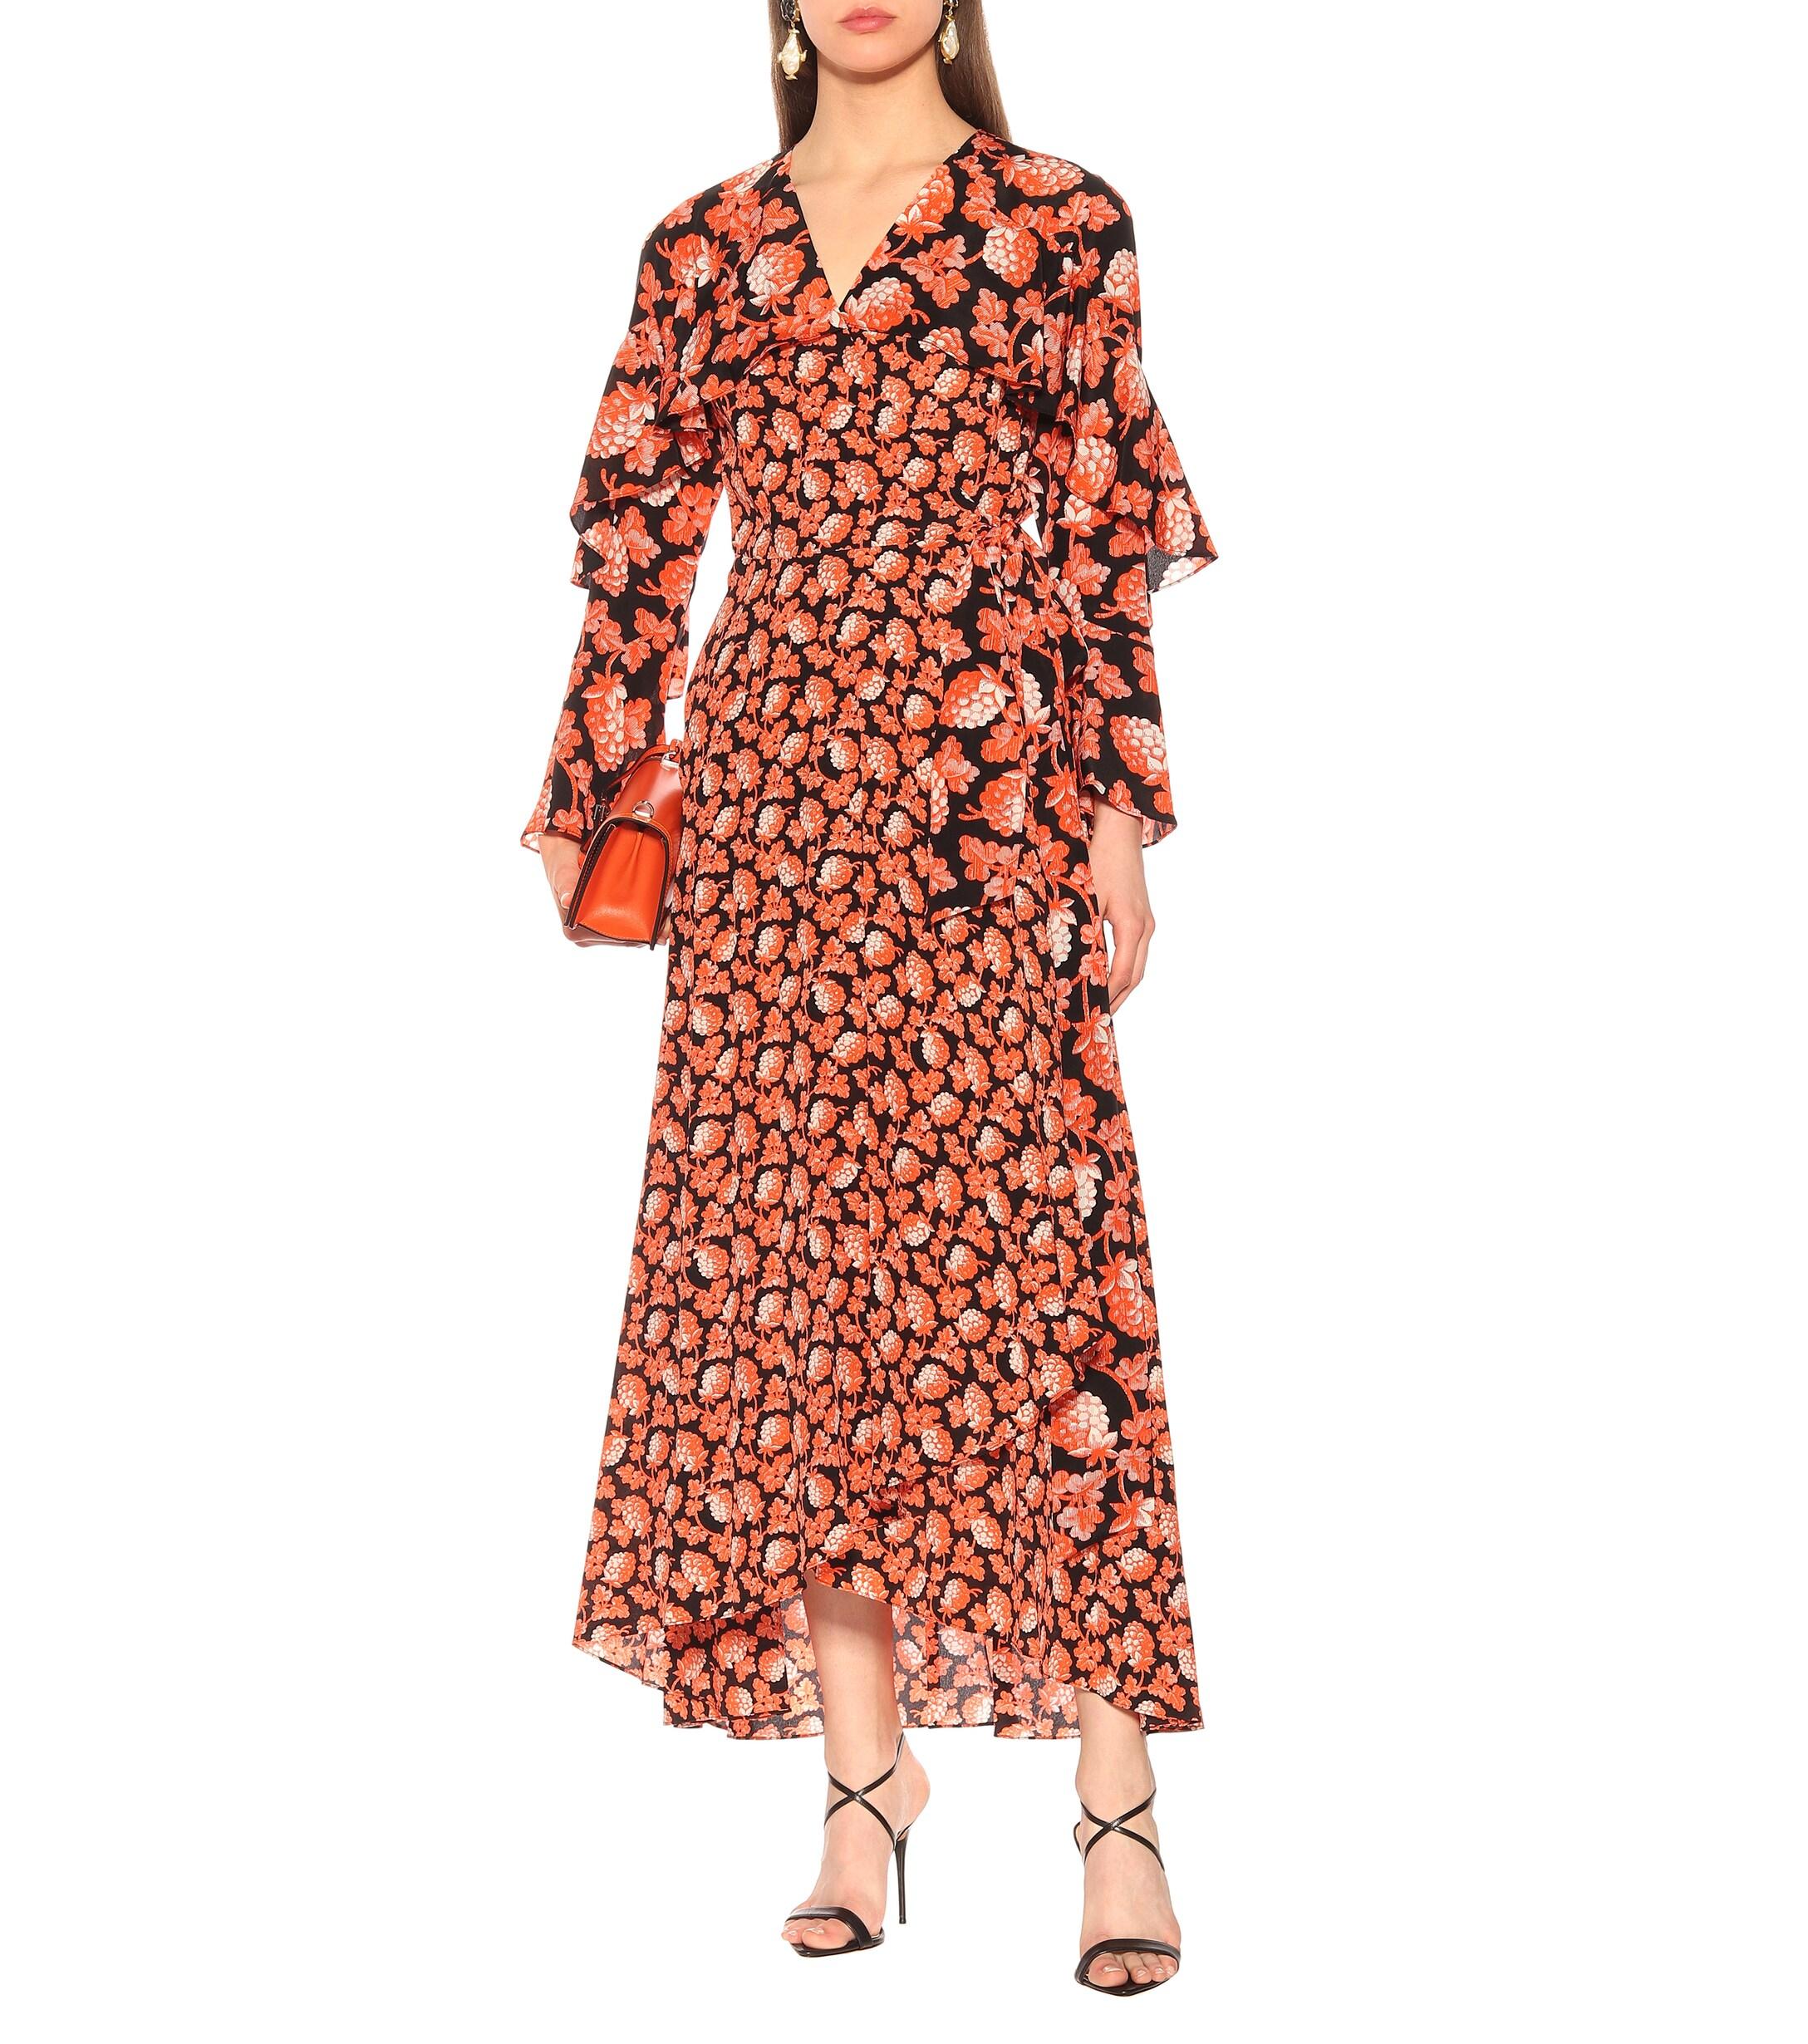 Diane von Furstenberg Alice Floral Silk Wrap Dress in Orange - Lyst